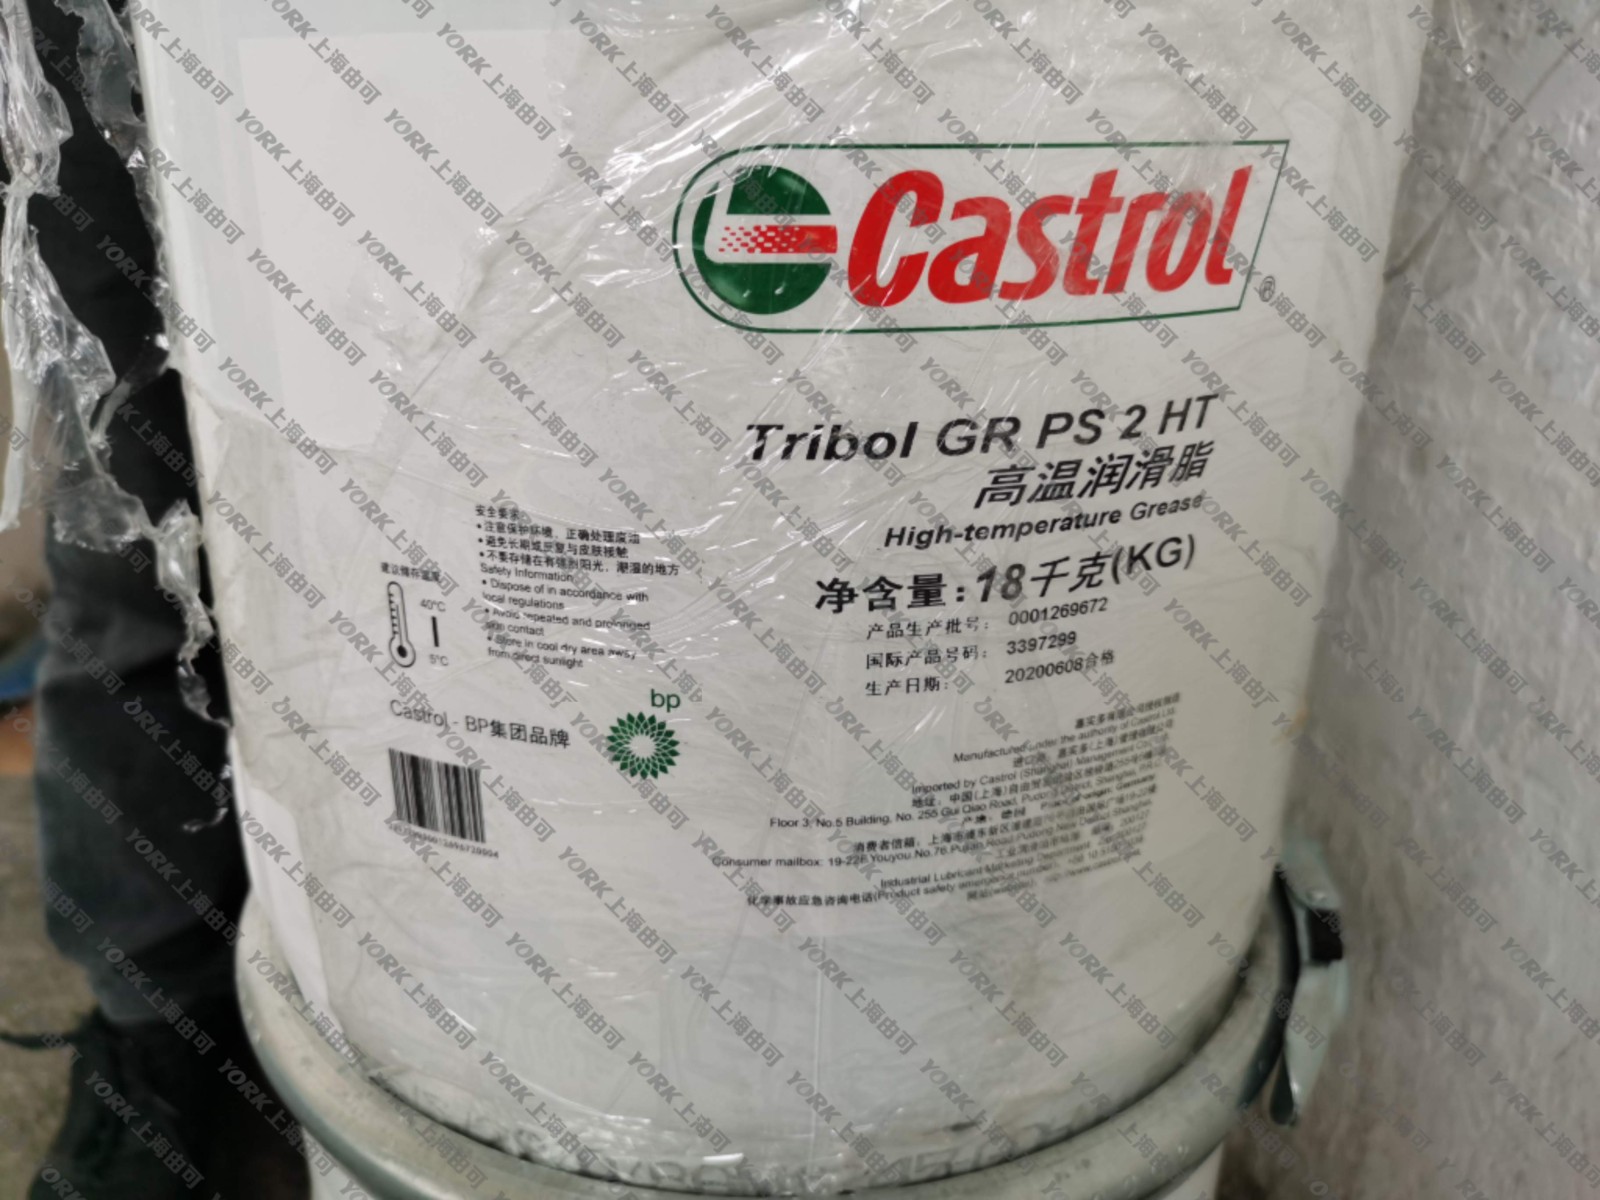 嘉實多/Castrol Tribol GR PS 2 HT高溫潤滑脂 